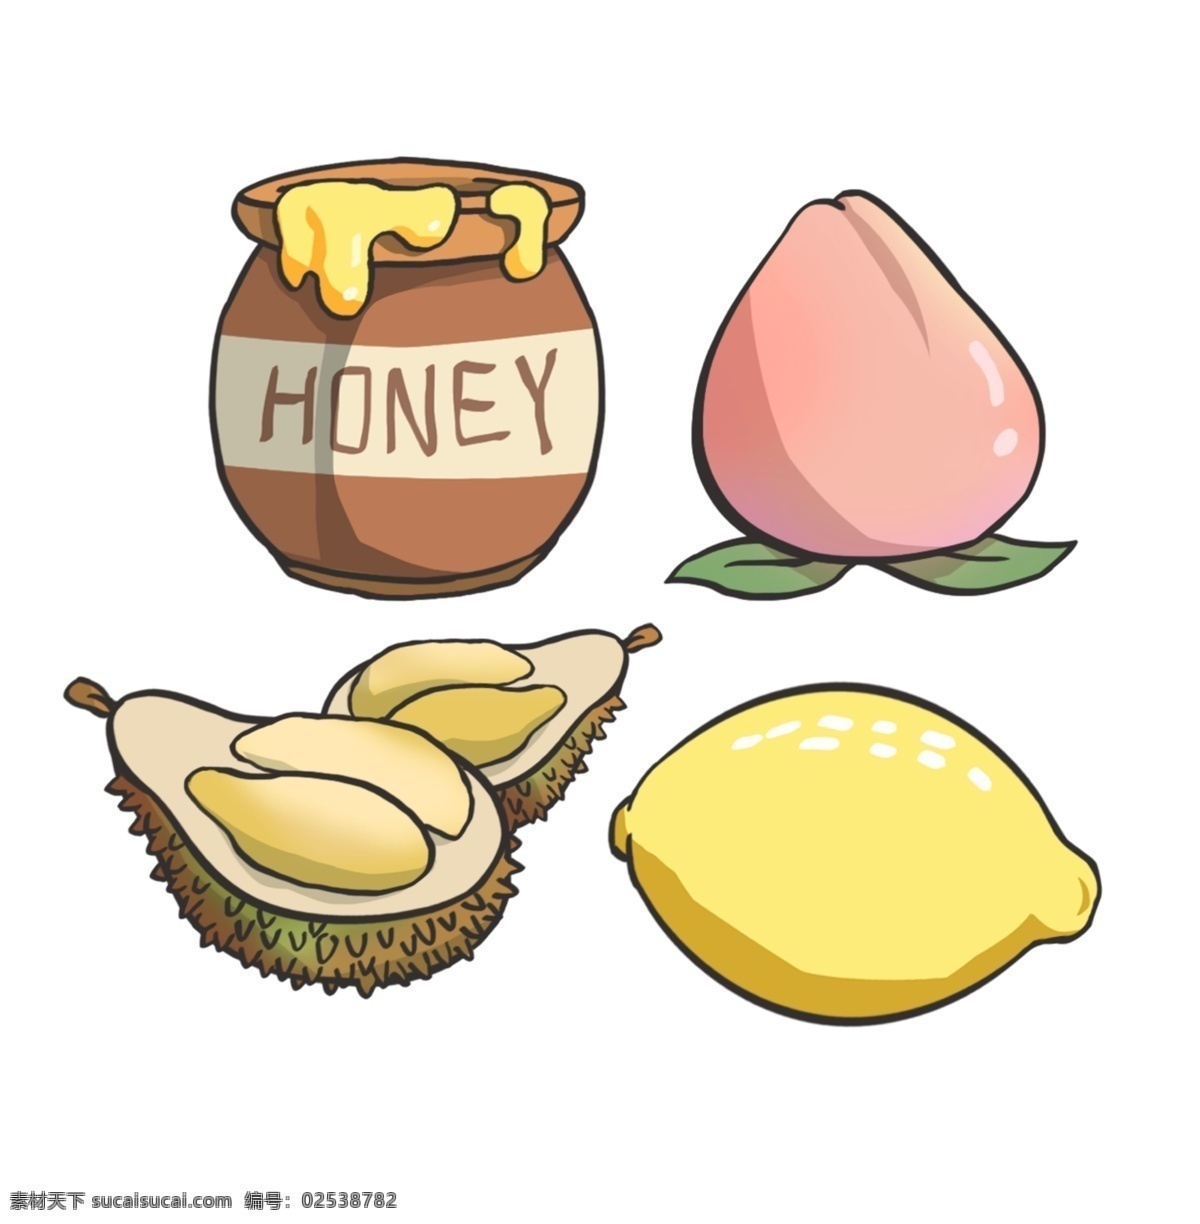 桃子 榴莲 蜂蜜 柠檬 手绘 素材图片 水果 插画素材 psd素材 水果手绘 食物手绘 手绘素材 分层